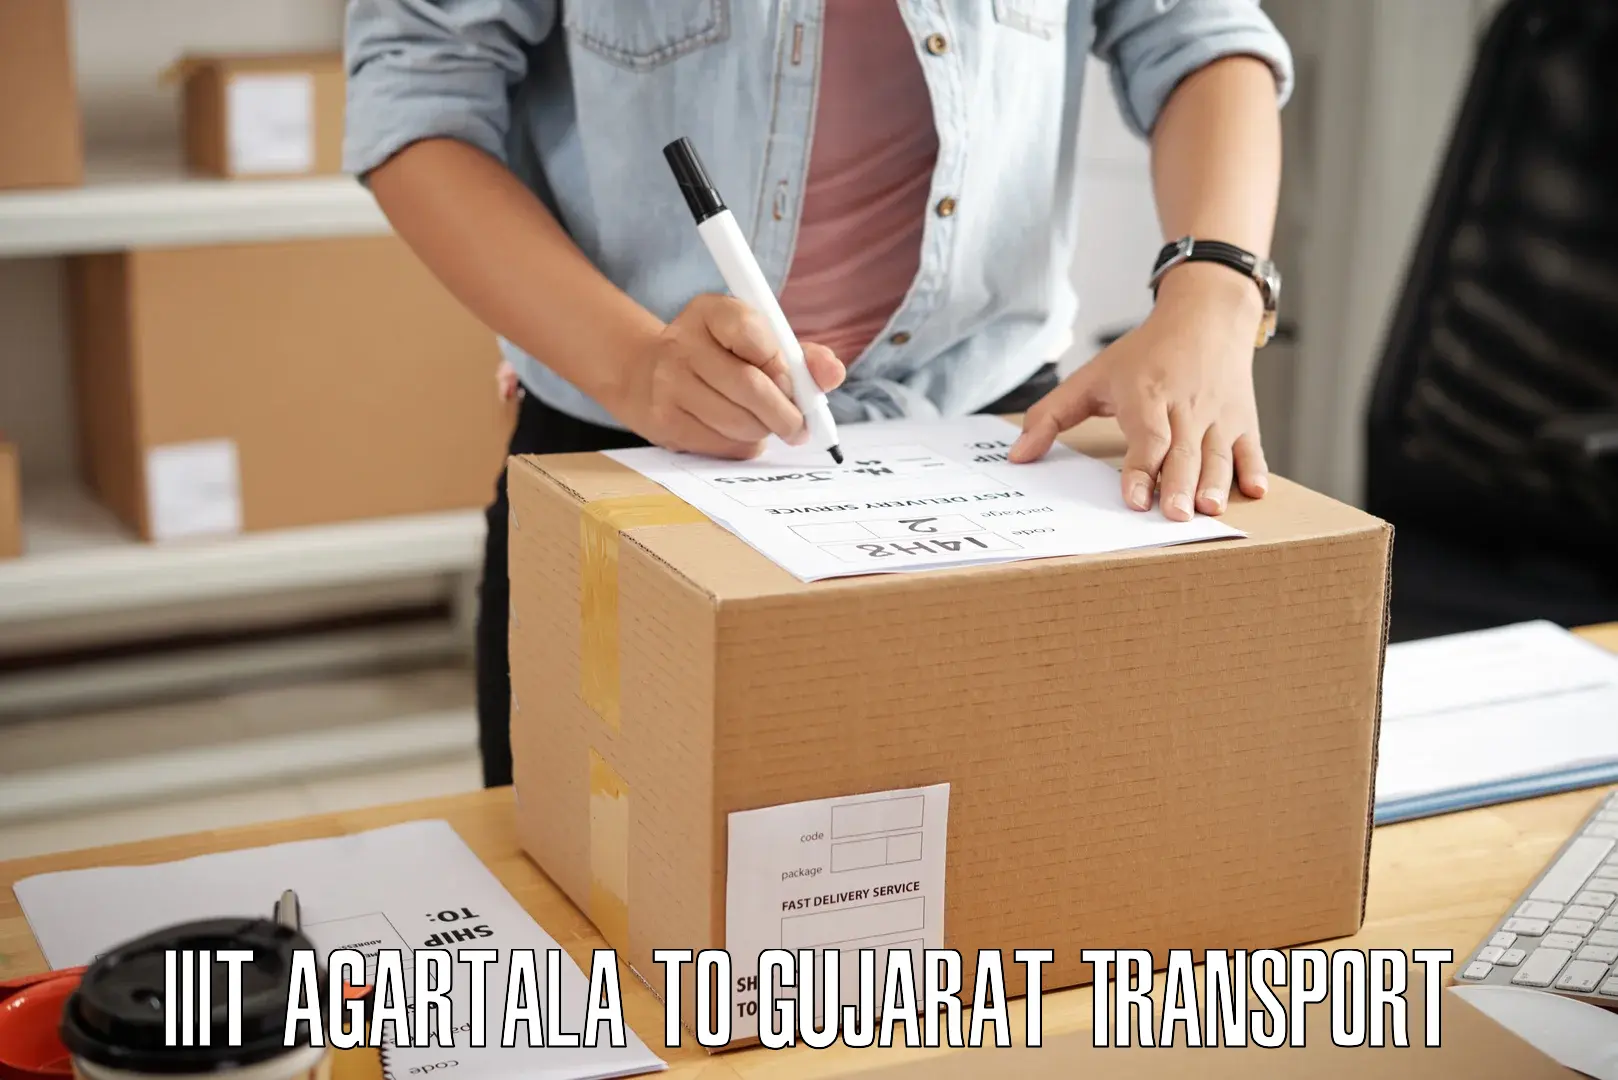 Cargo transportation services IIIT Agartala to Madhavpur